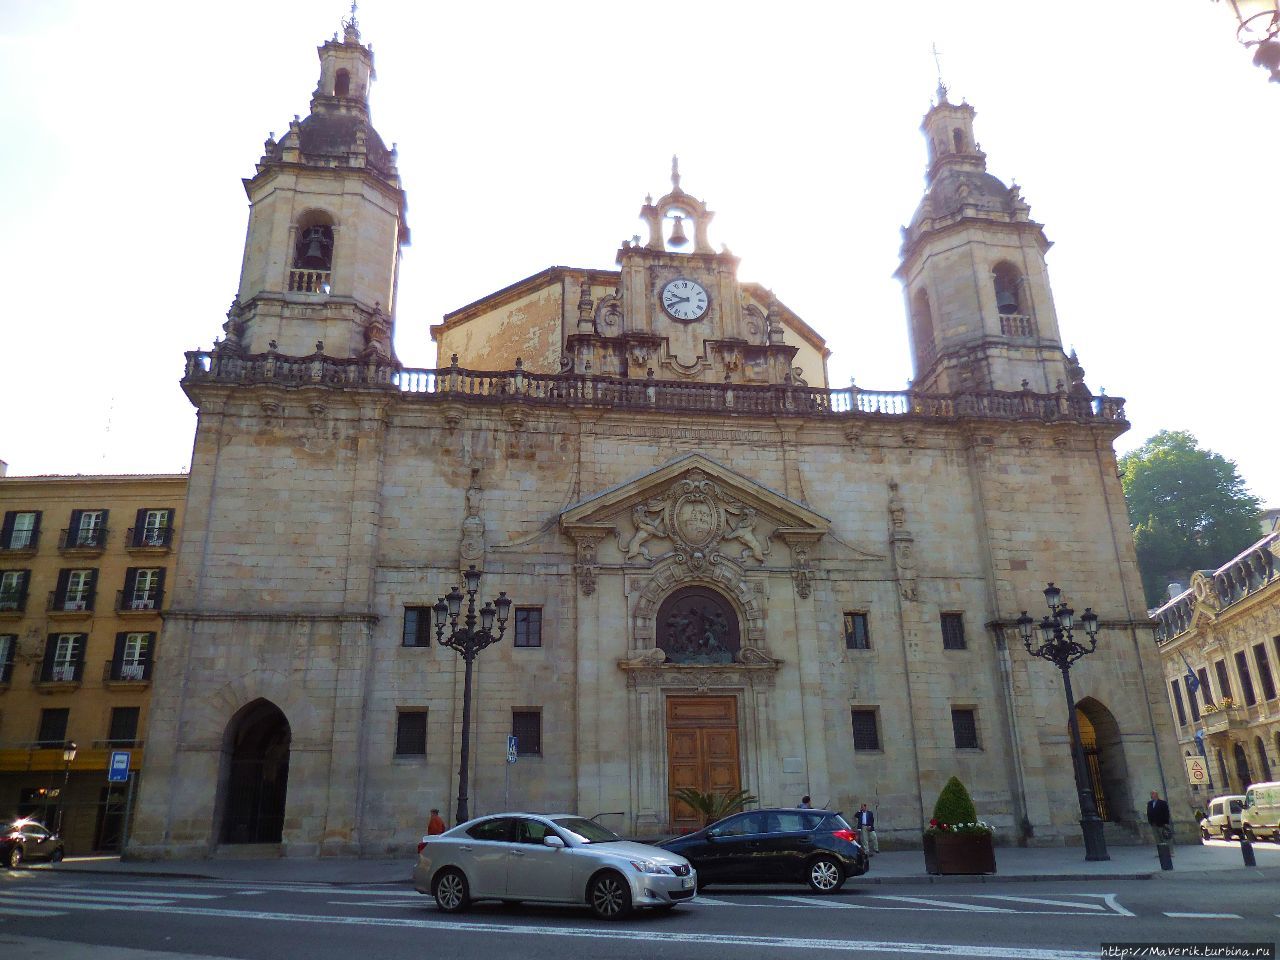 Церковь Святого Николая (Iglesia de San Nicolas). Бильбао, Испания